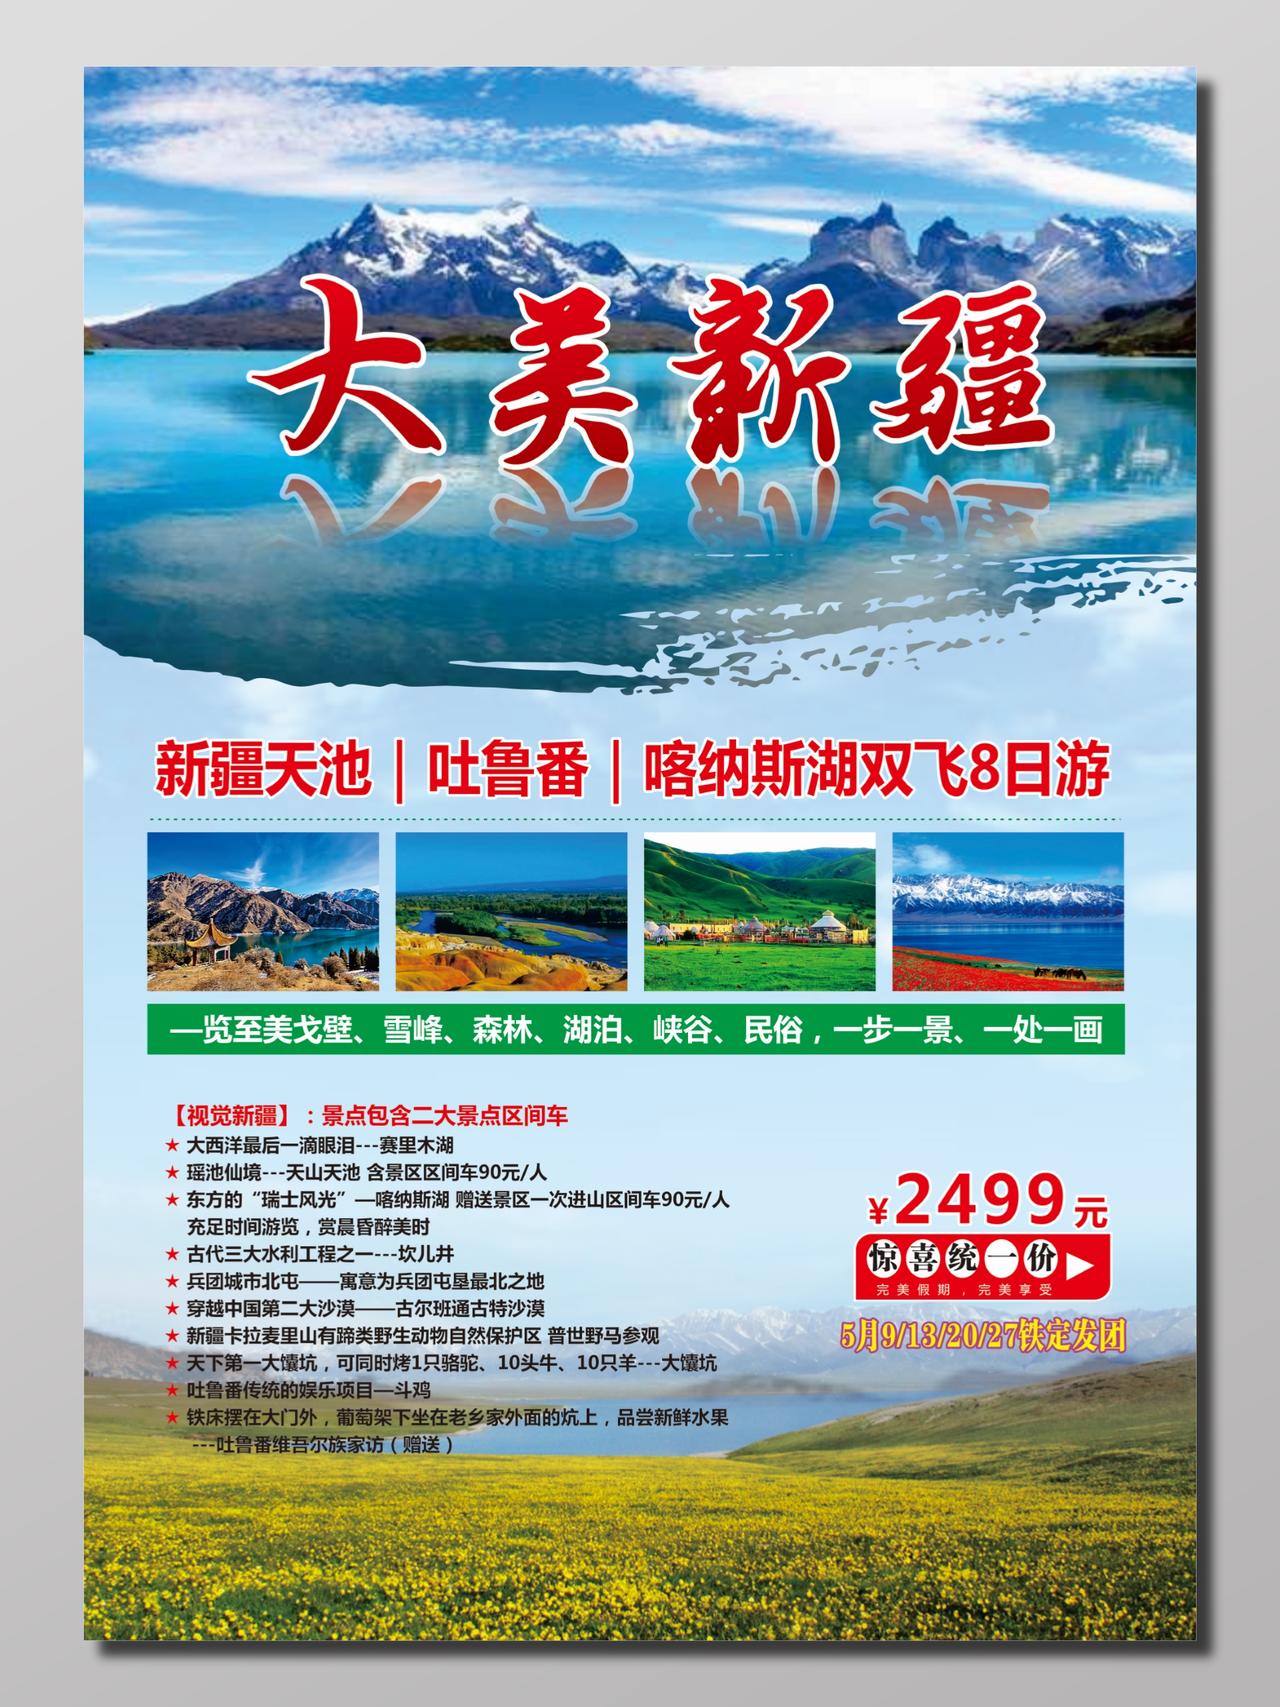 大美新疆旅游景点双飞8日游宣传单